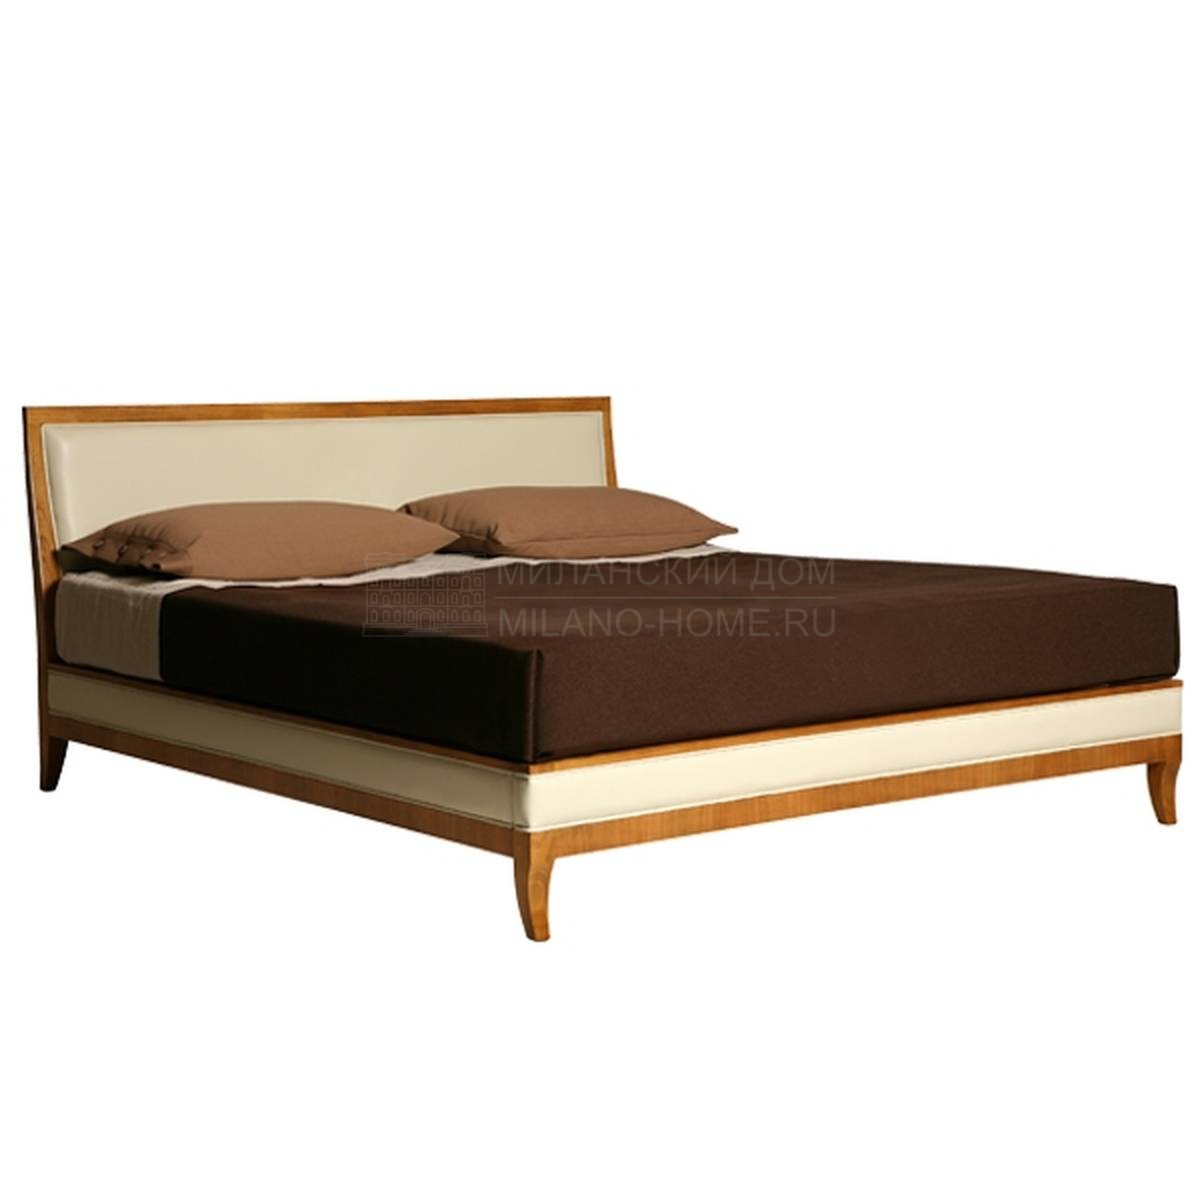 Кровать с комбинированным изголовьем Umberto art.2885 из Италии фабрики MORELATO